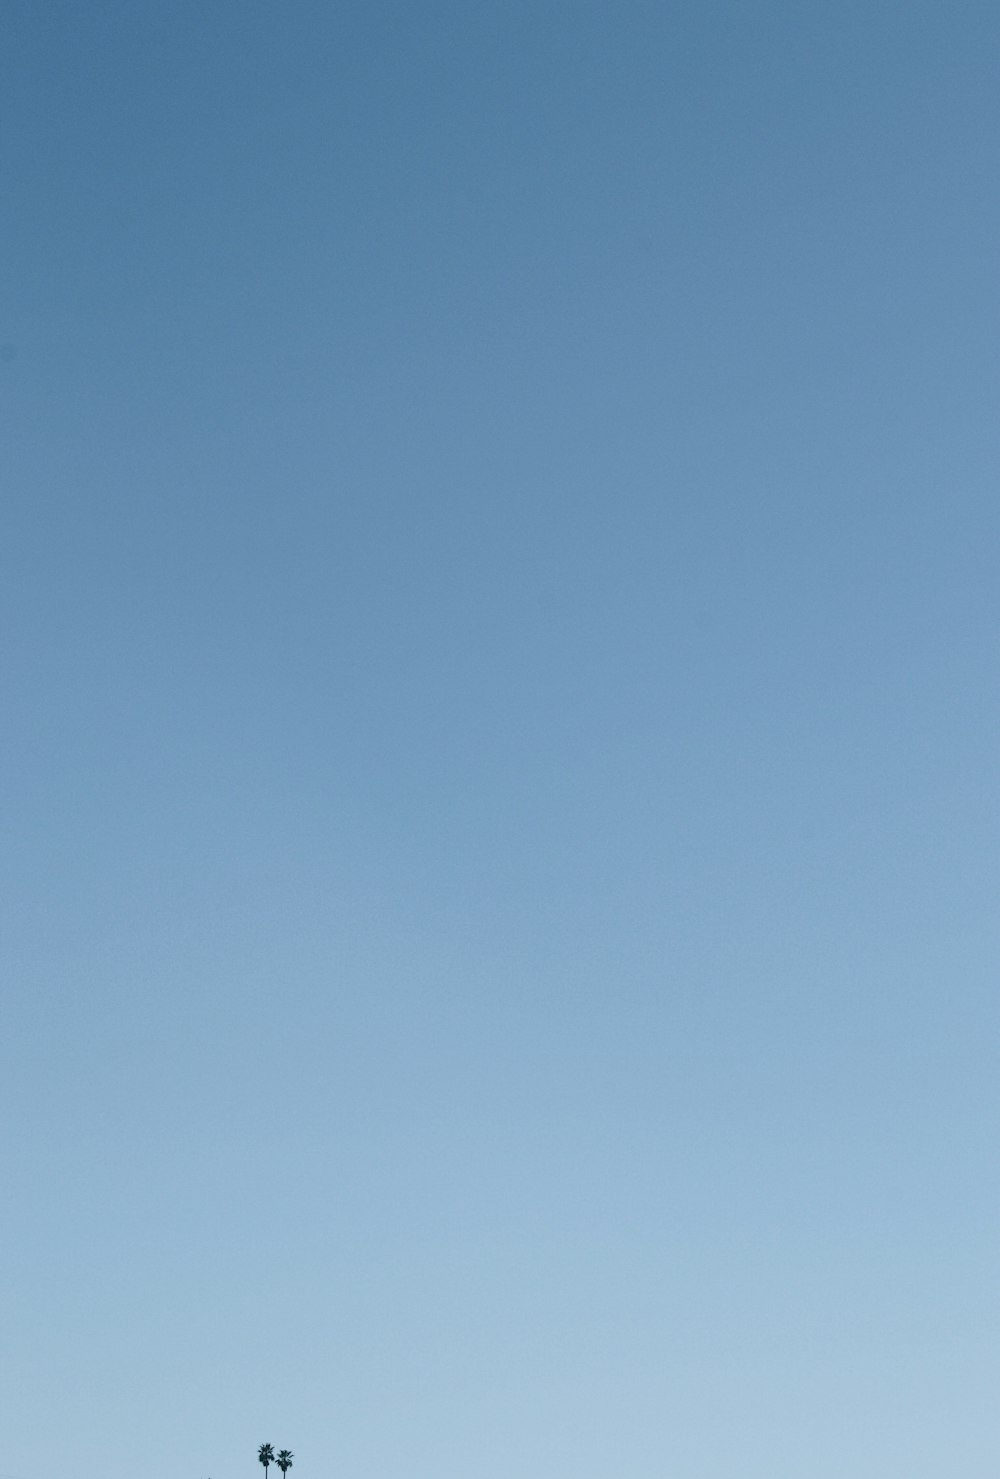 Una persona volando una cometa en un cielo azul